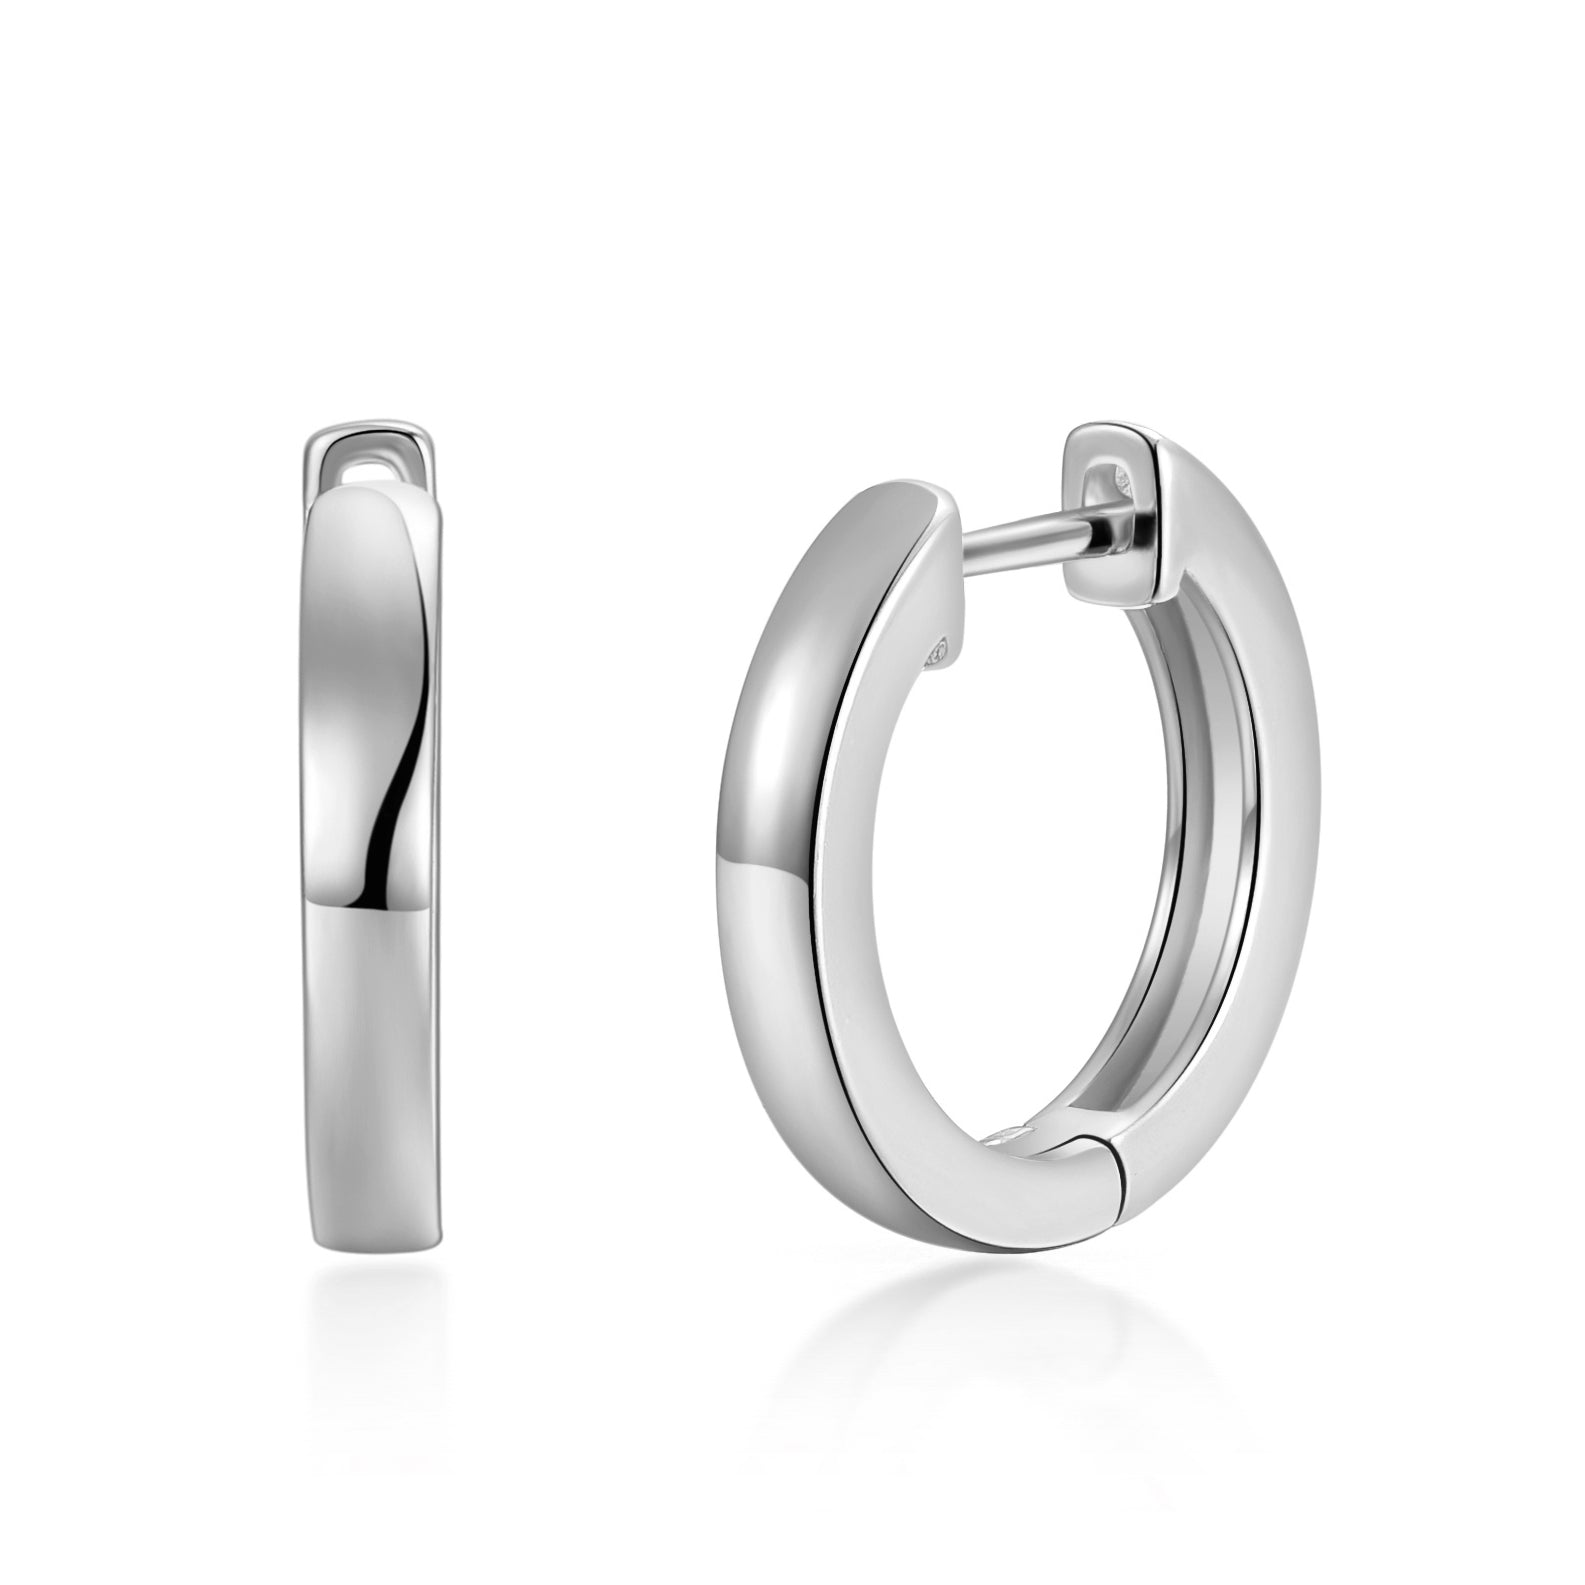 Silver Plated Hoop Earrings by Philip Jones Jewellery